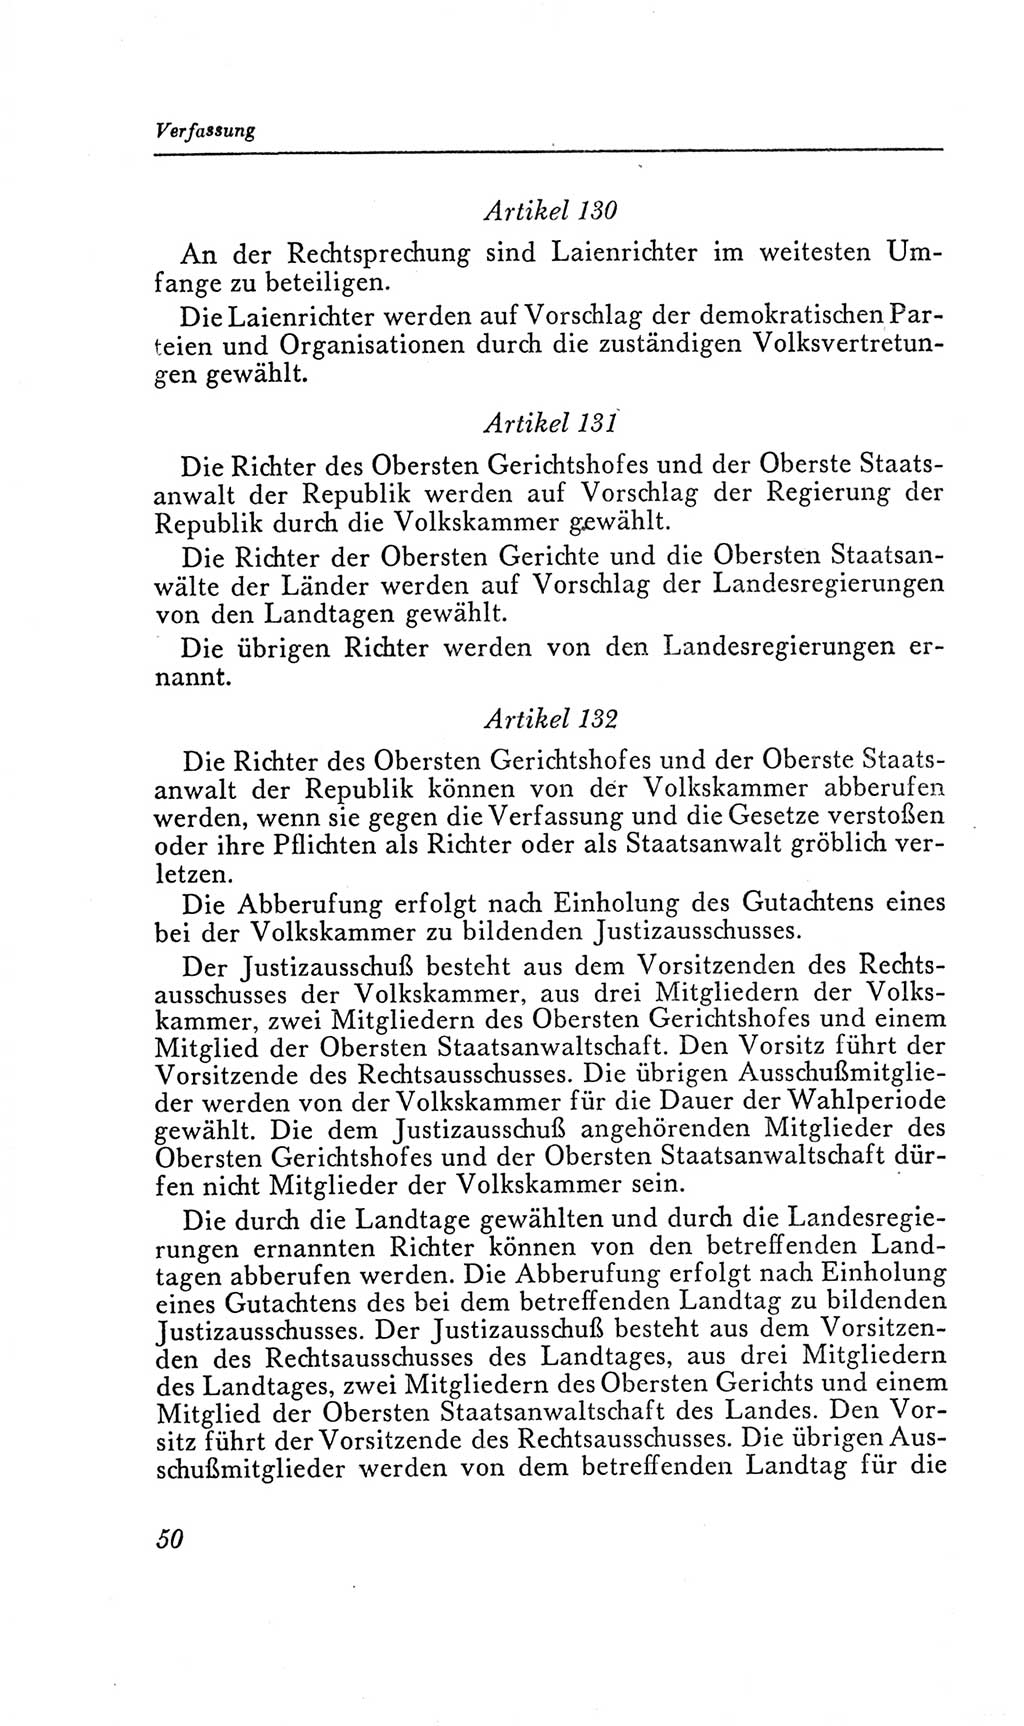 Handbuch der Volkskammer (VK) der Deutschen Demokratischen Republik (DDR), 2. Wahlperiode 1954-1958, Seite 50 (Hdb. VK. DDR, 2. WP. 1954-1958, S. 50)